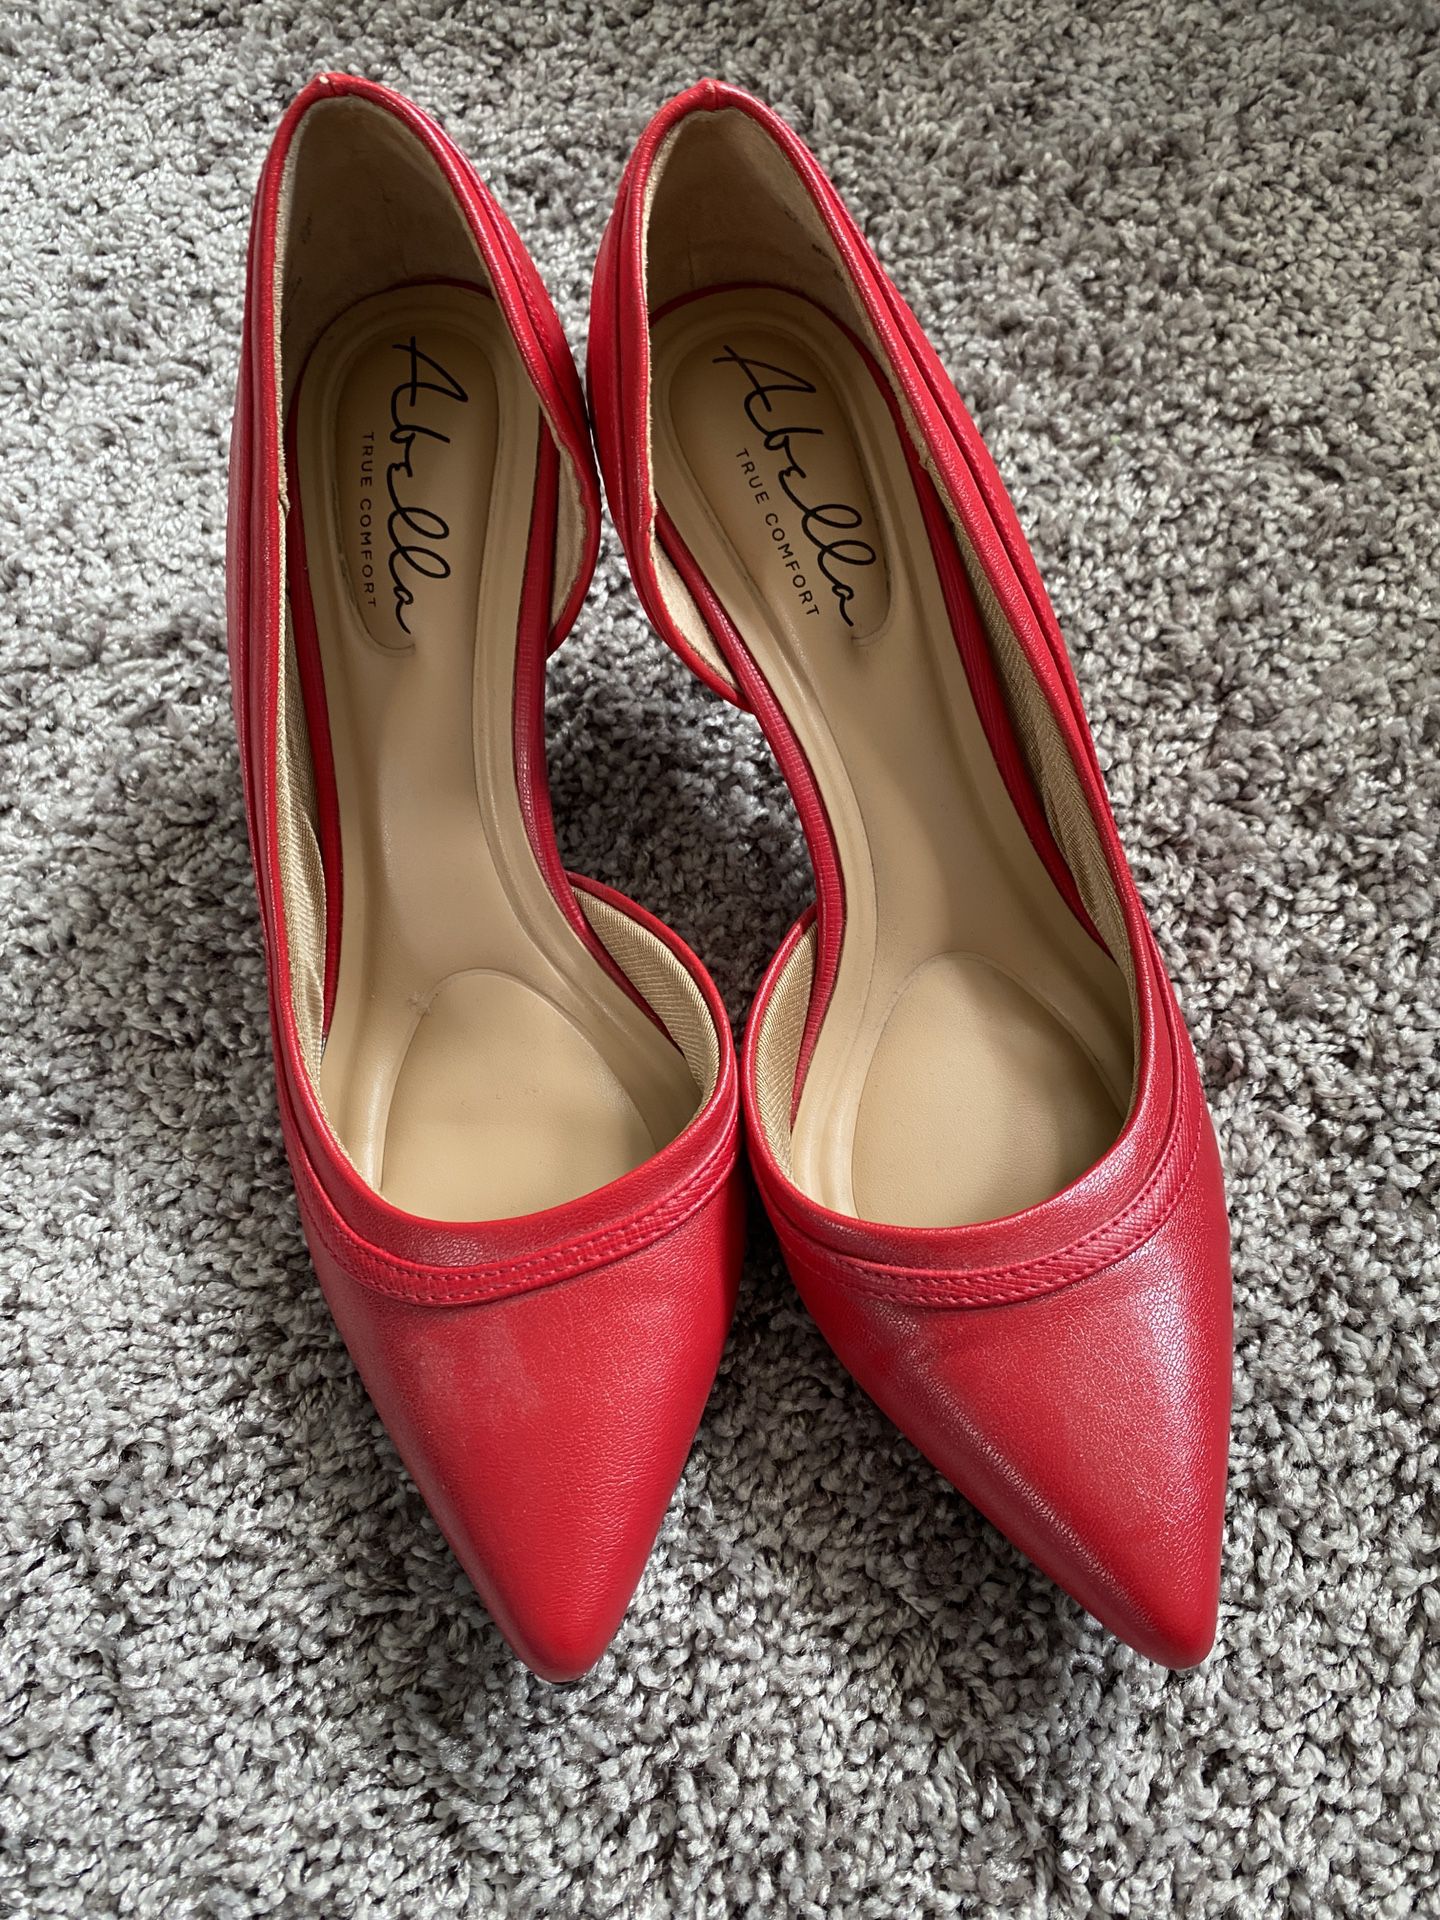 Women’s Red High Heels